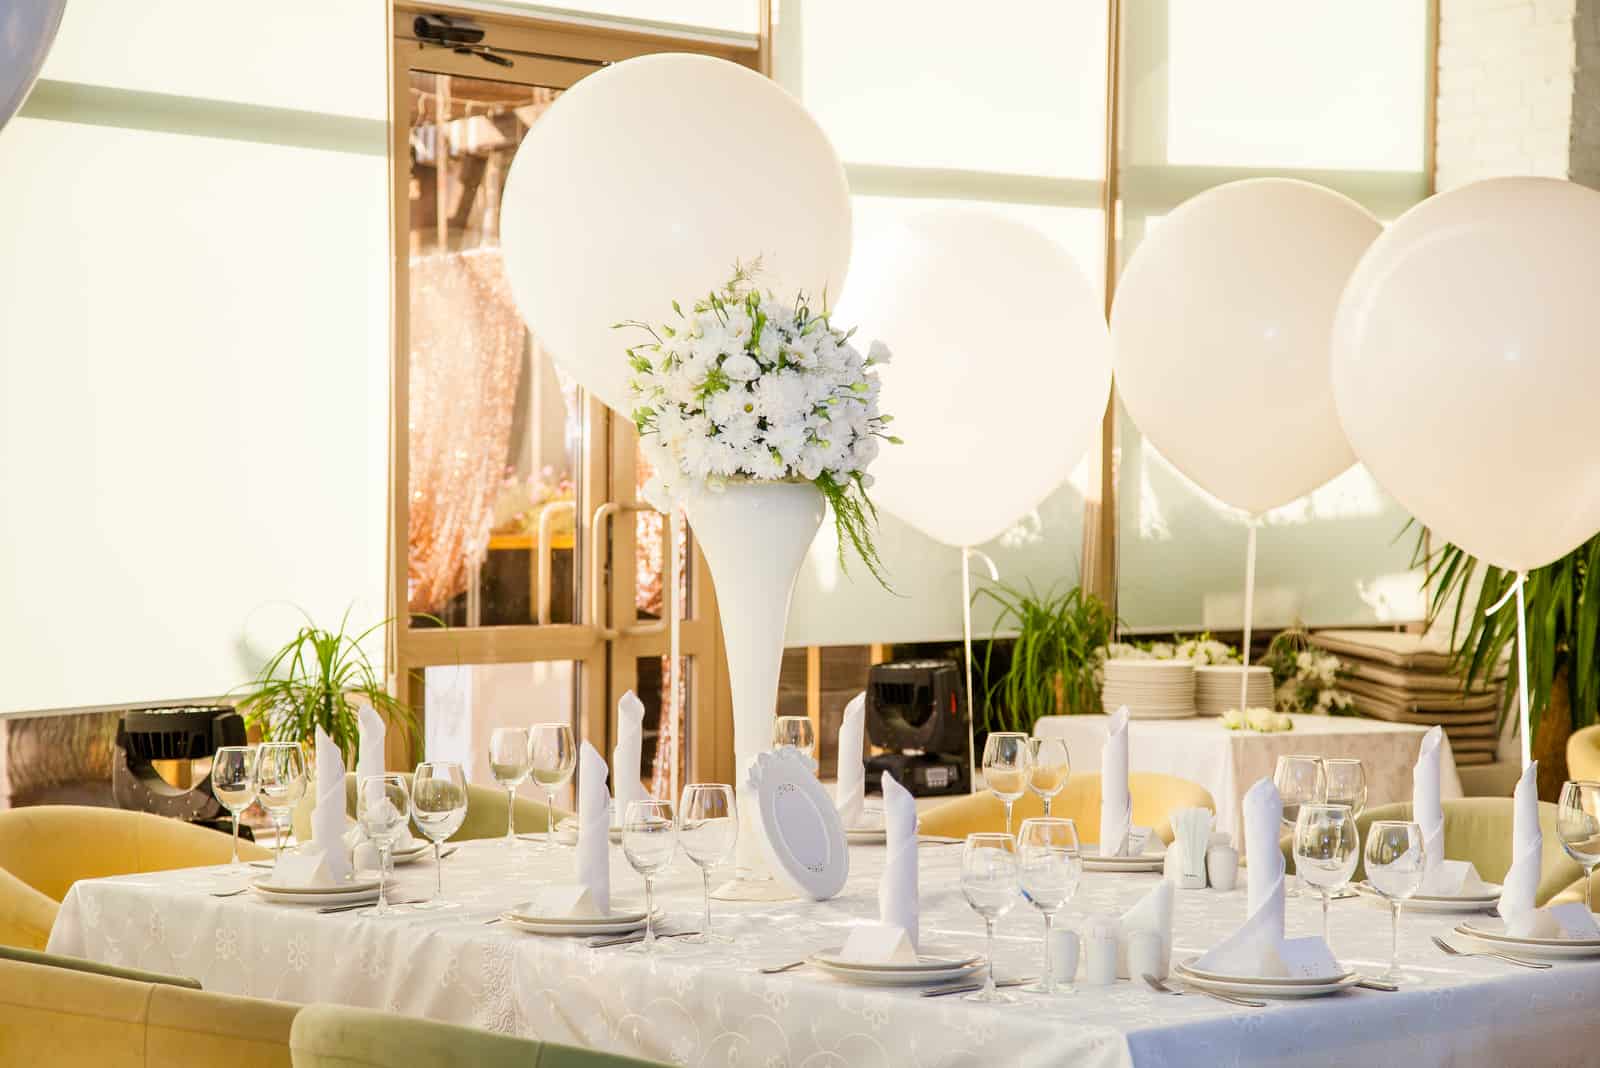 Hochzeitstische im Restaurant mit weißen Blumen und riesigen weißen Luftballons